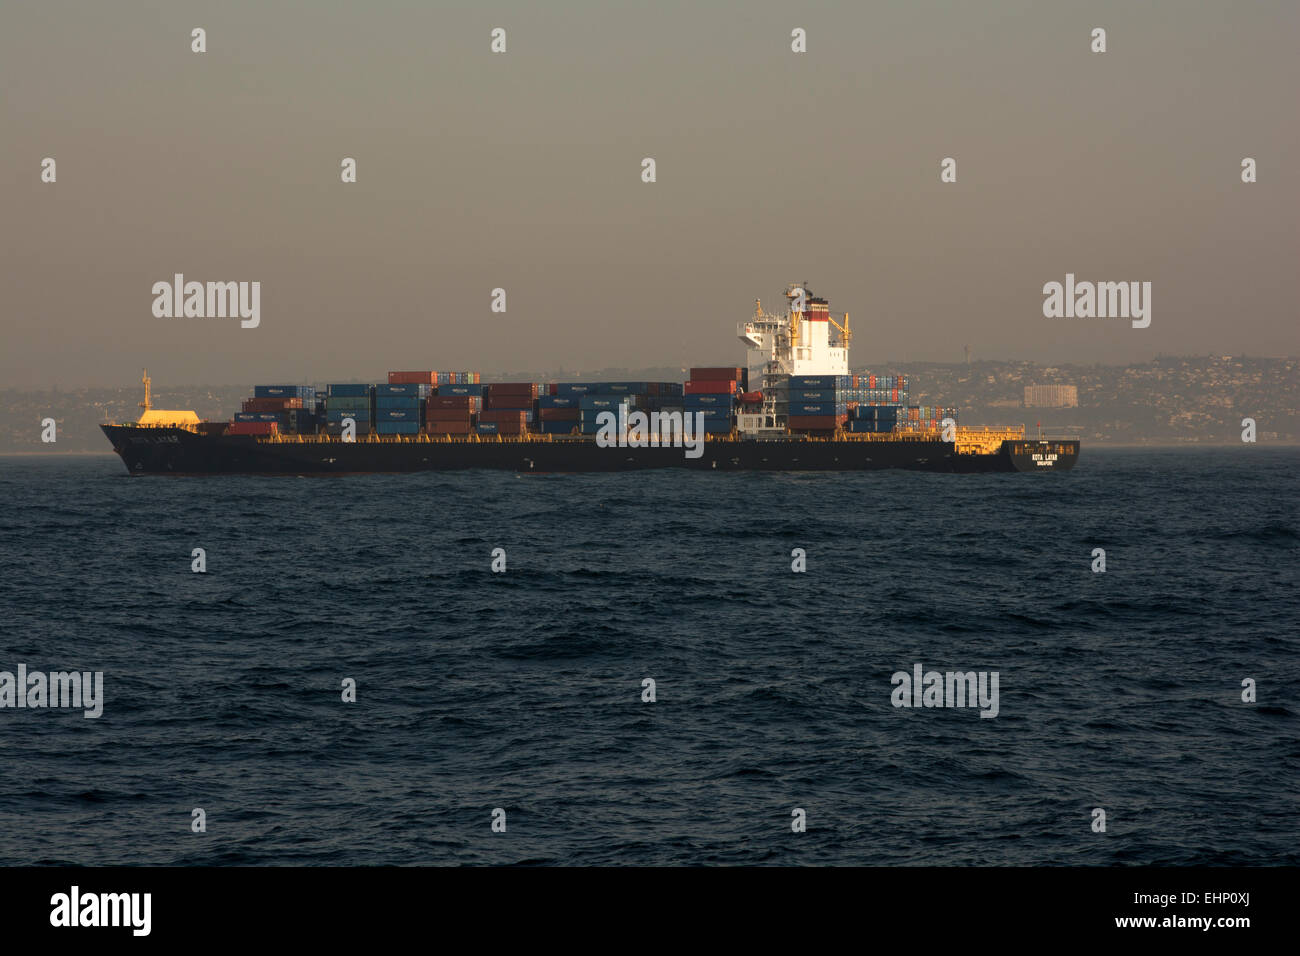 Kota Layar es un contenedor de 261 metros de largo buque navegaba bajo bandera de Singapur con un peso muerto de 50595 toneladas. Foto de stock